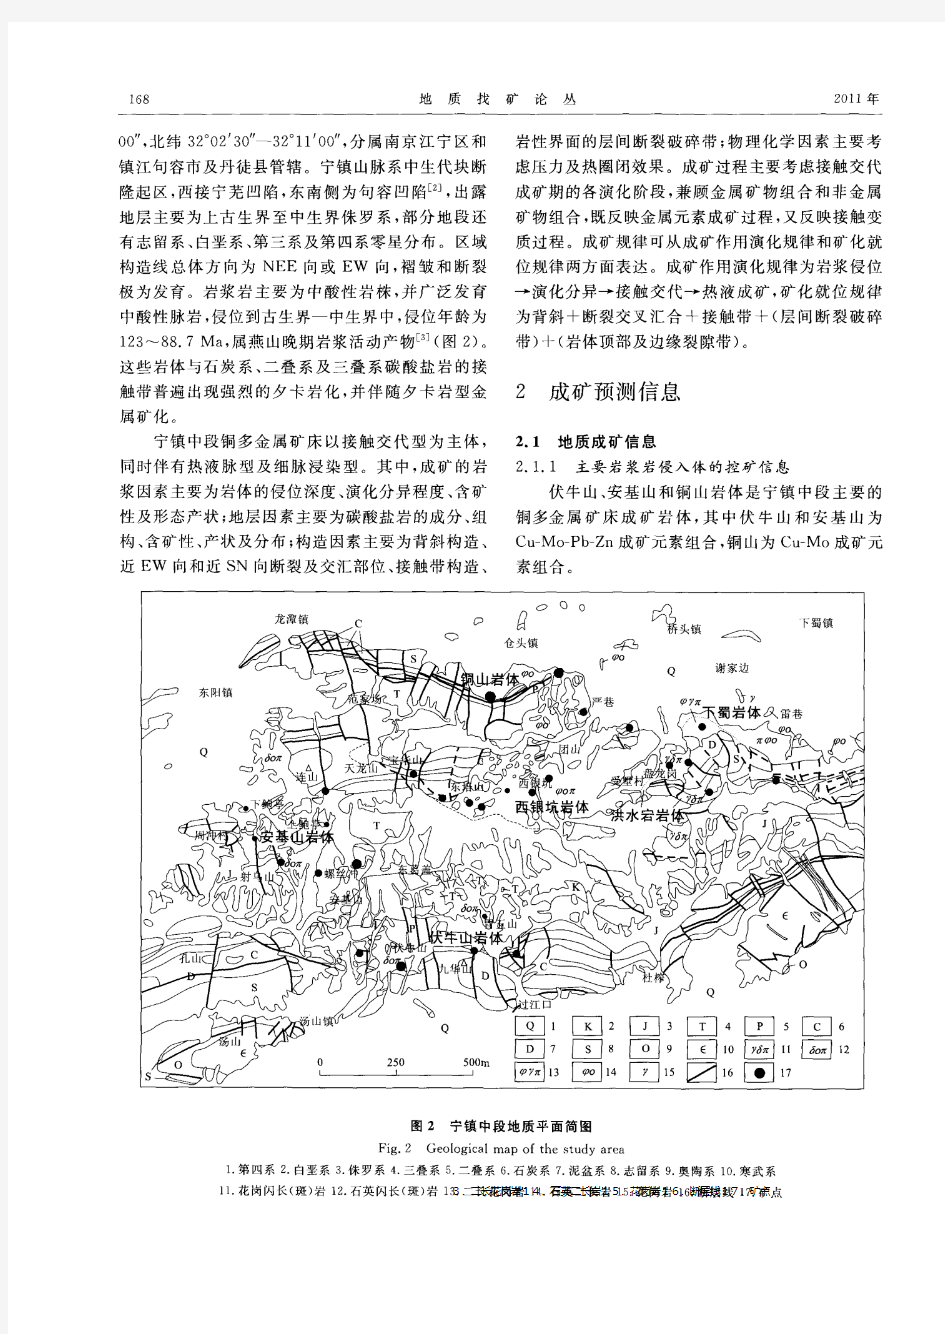 宁镇中段夕卡岩型铜多金属矿床多元信息成矿预测初步研究